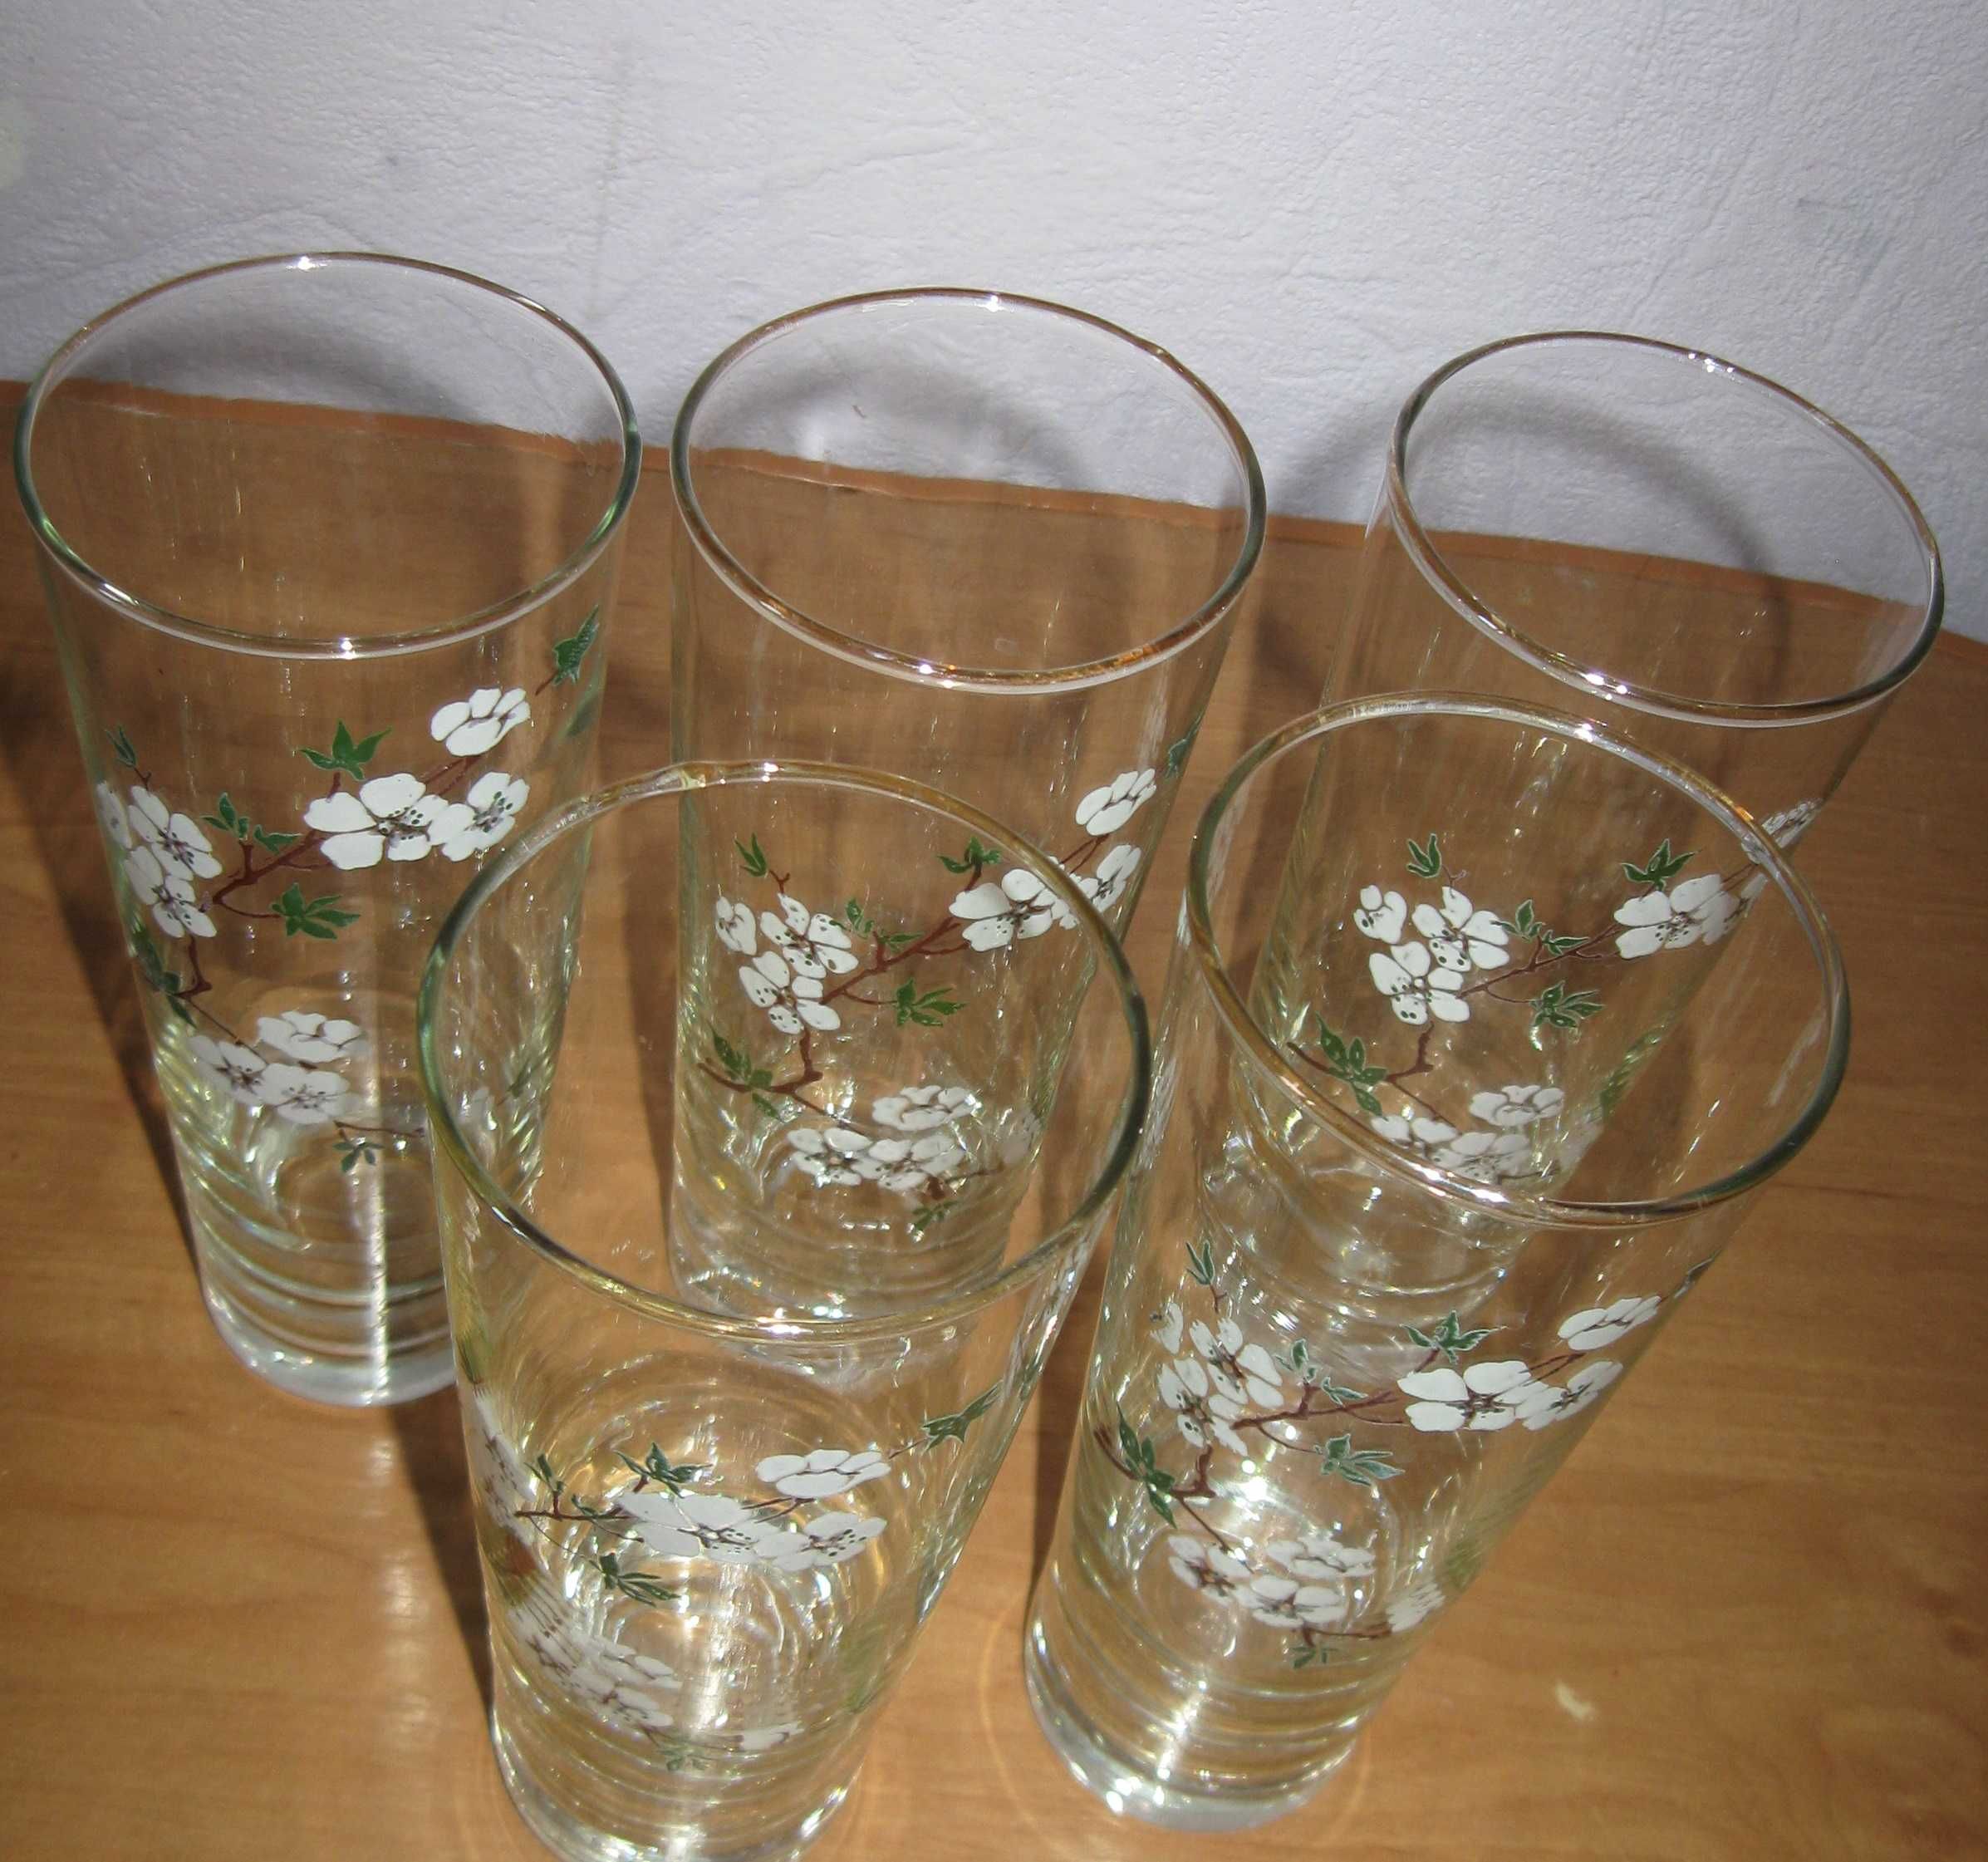 стаканы для сока с рисунком белых цветочков 5 штук